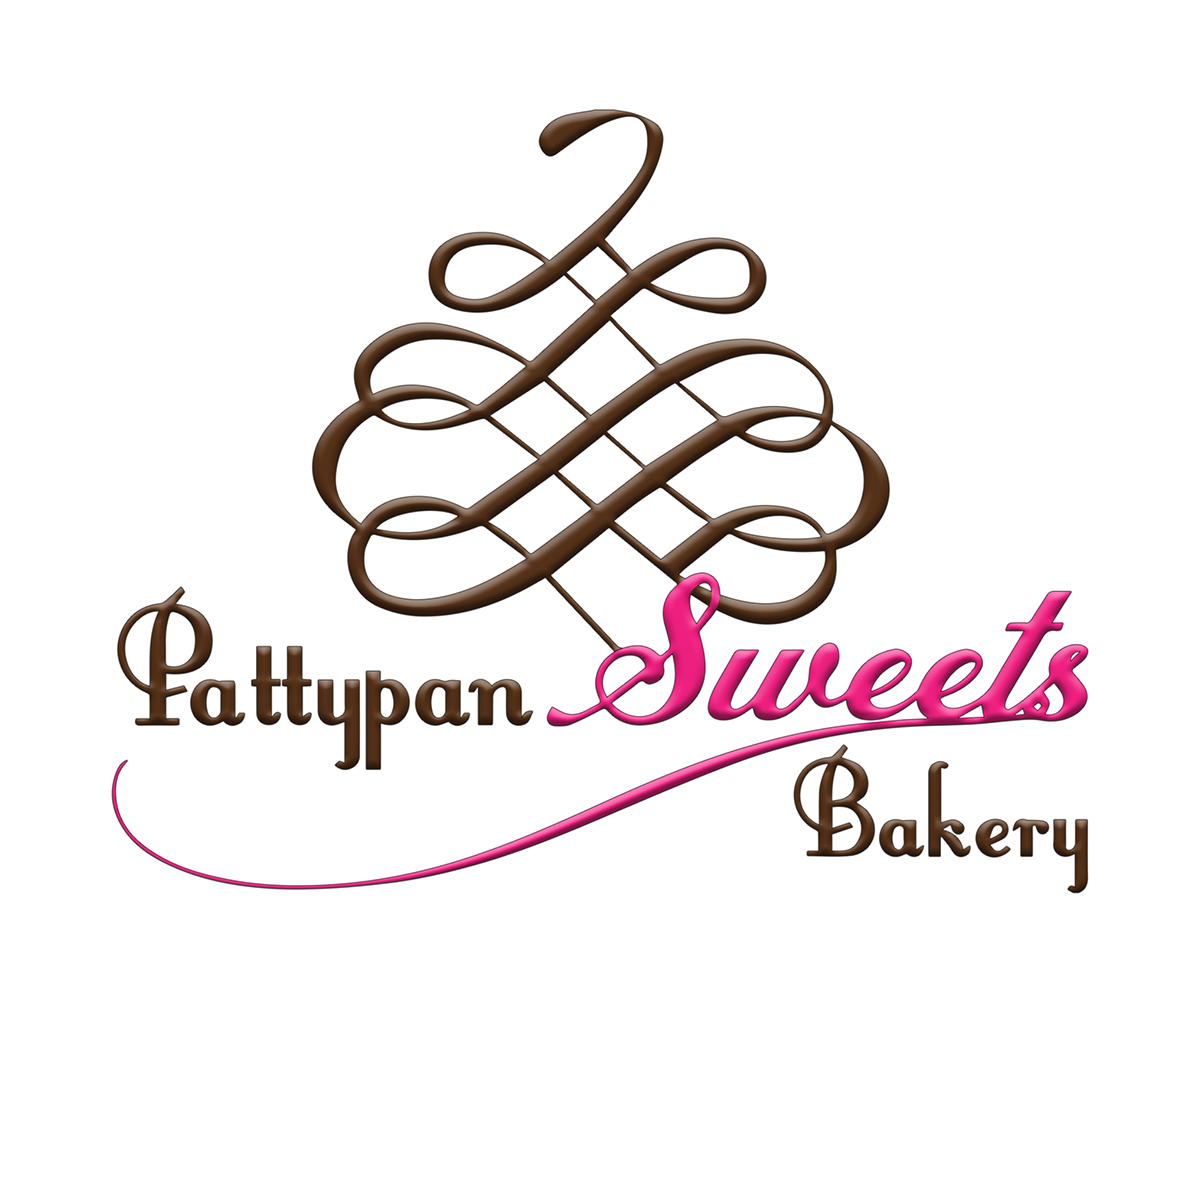 Pattypan Sweets